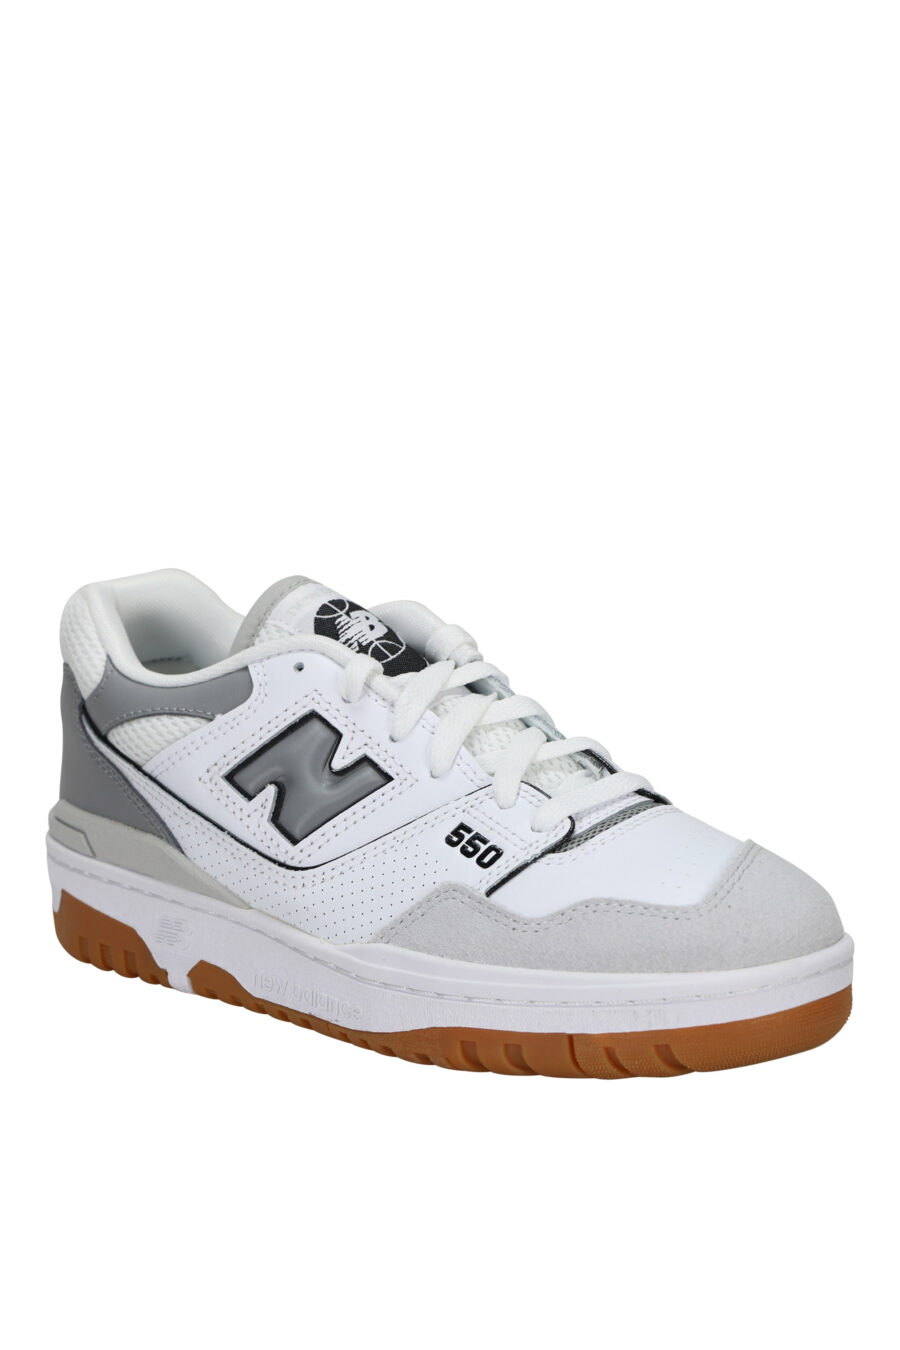 Zapatillas blancas con gris y suela marrón "550" con logo "N" gris - 197375689111 1